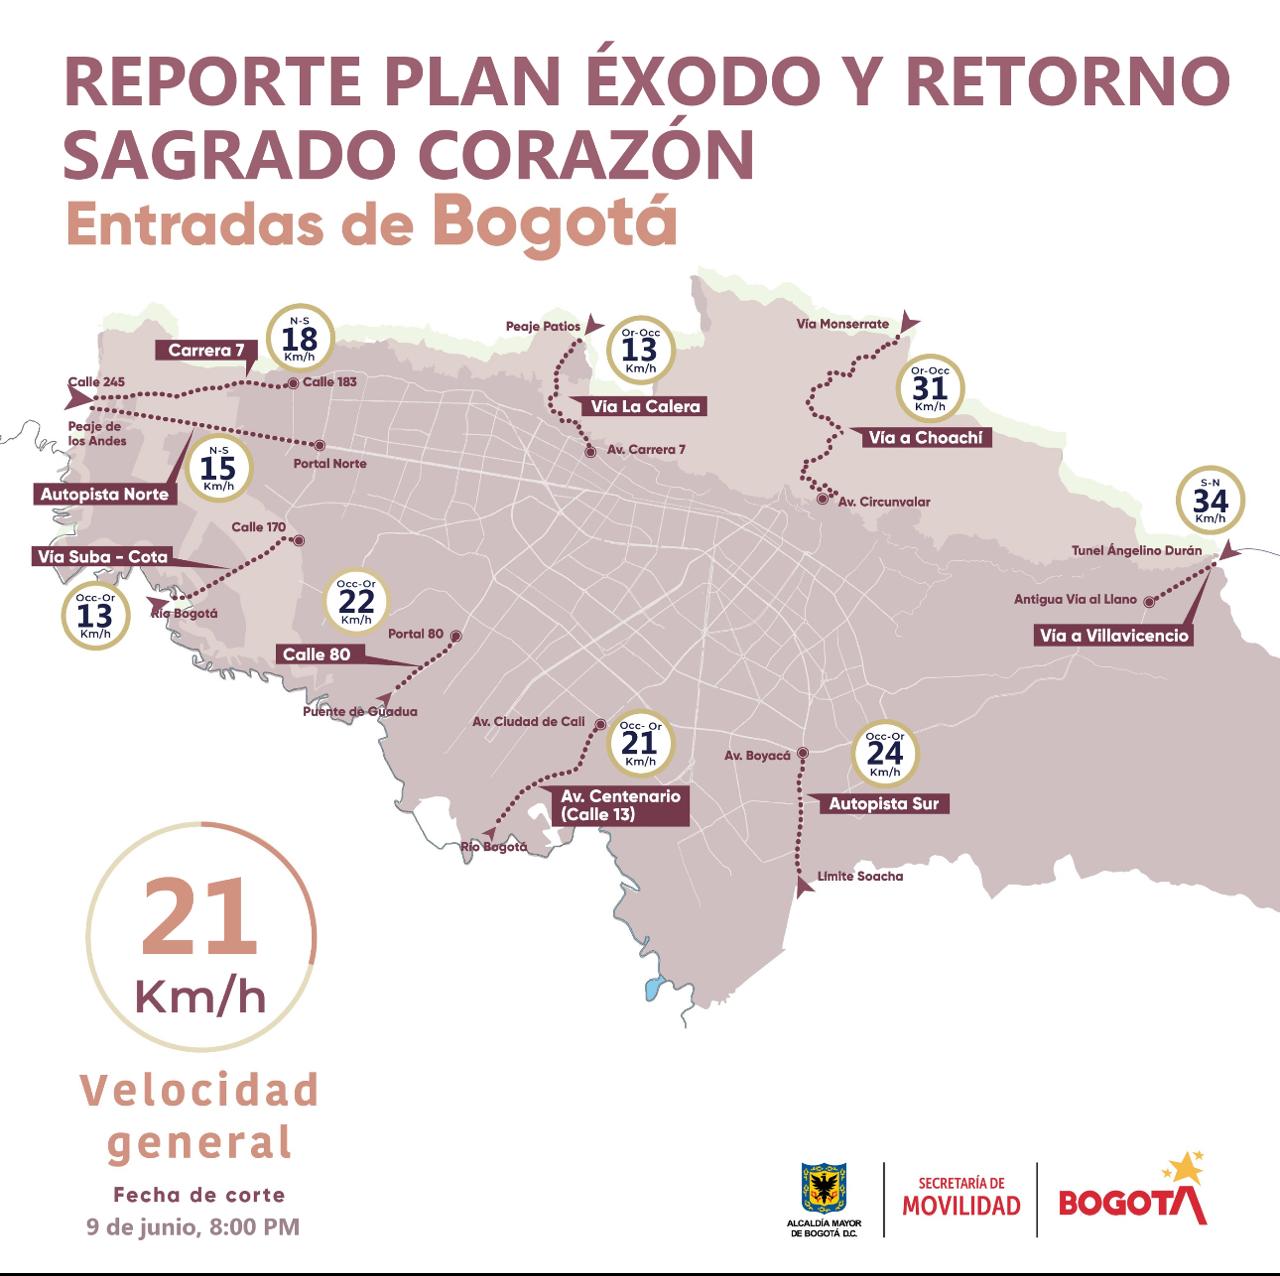 Más de 701.700 vehículos han salido de Bogotá y han ingresado más de 806.980 automotores - crédito Secretaría de Movilidad